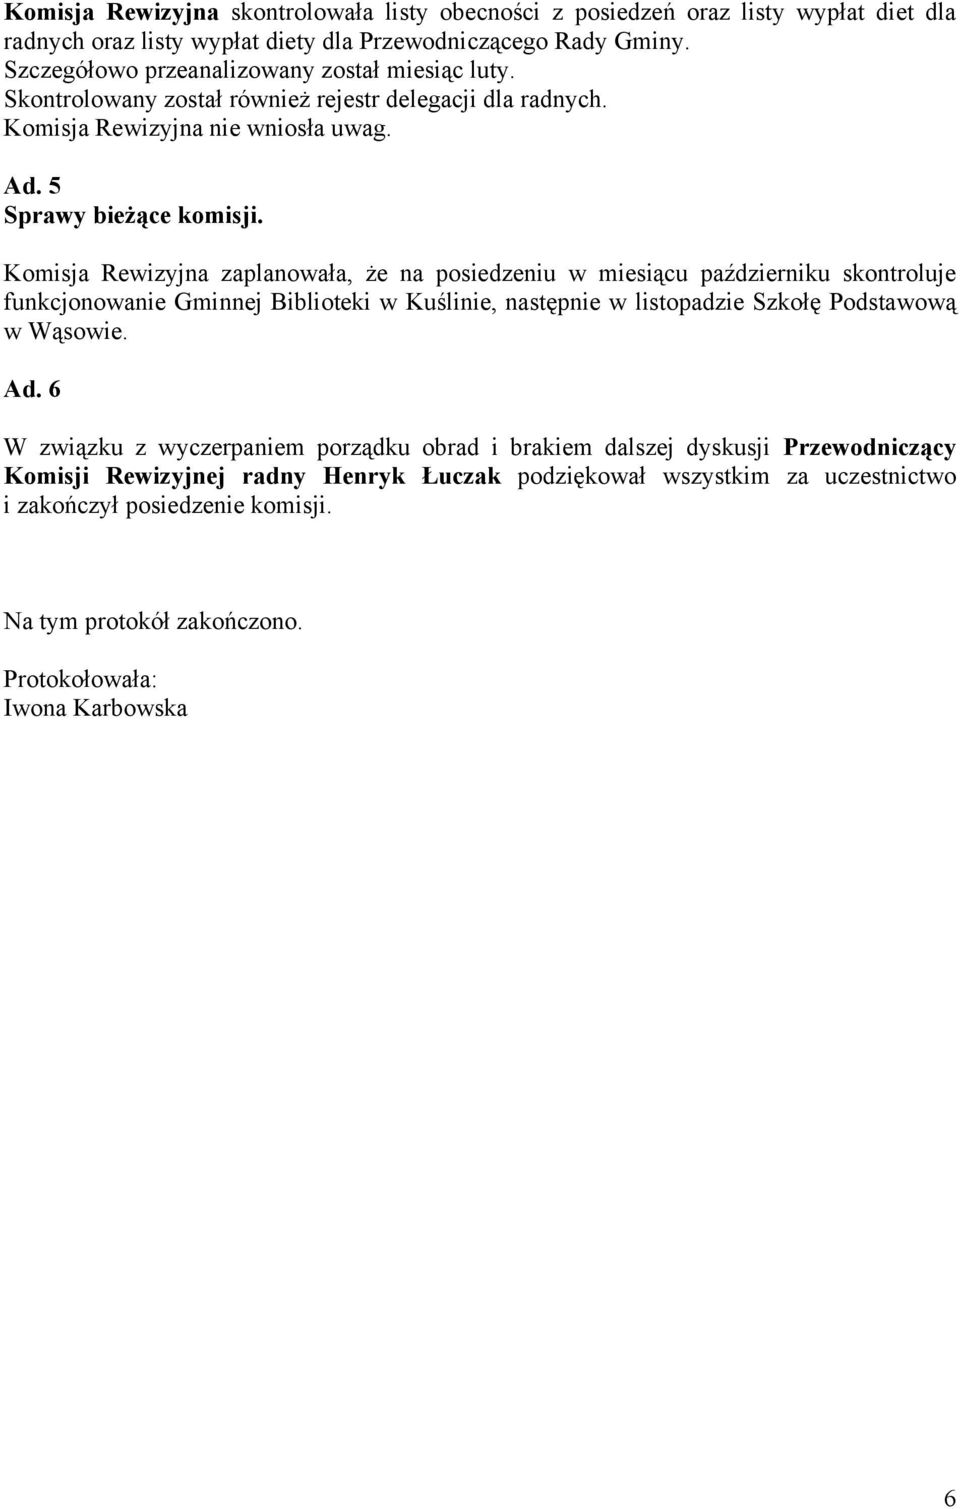 Komisja Rewizyjna zaplanowała, że na posiedzeniu w miesiącu październiku skontroluje funkcjonowanie Gminnej Biblioteki w Kuślinie, następnie w listopadzie Szkołę Podstawową w Wąsowie. Ad.